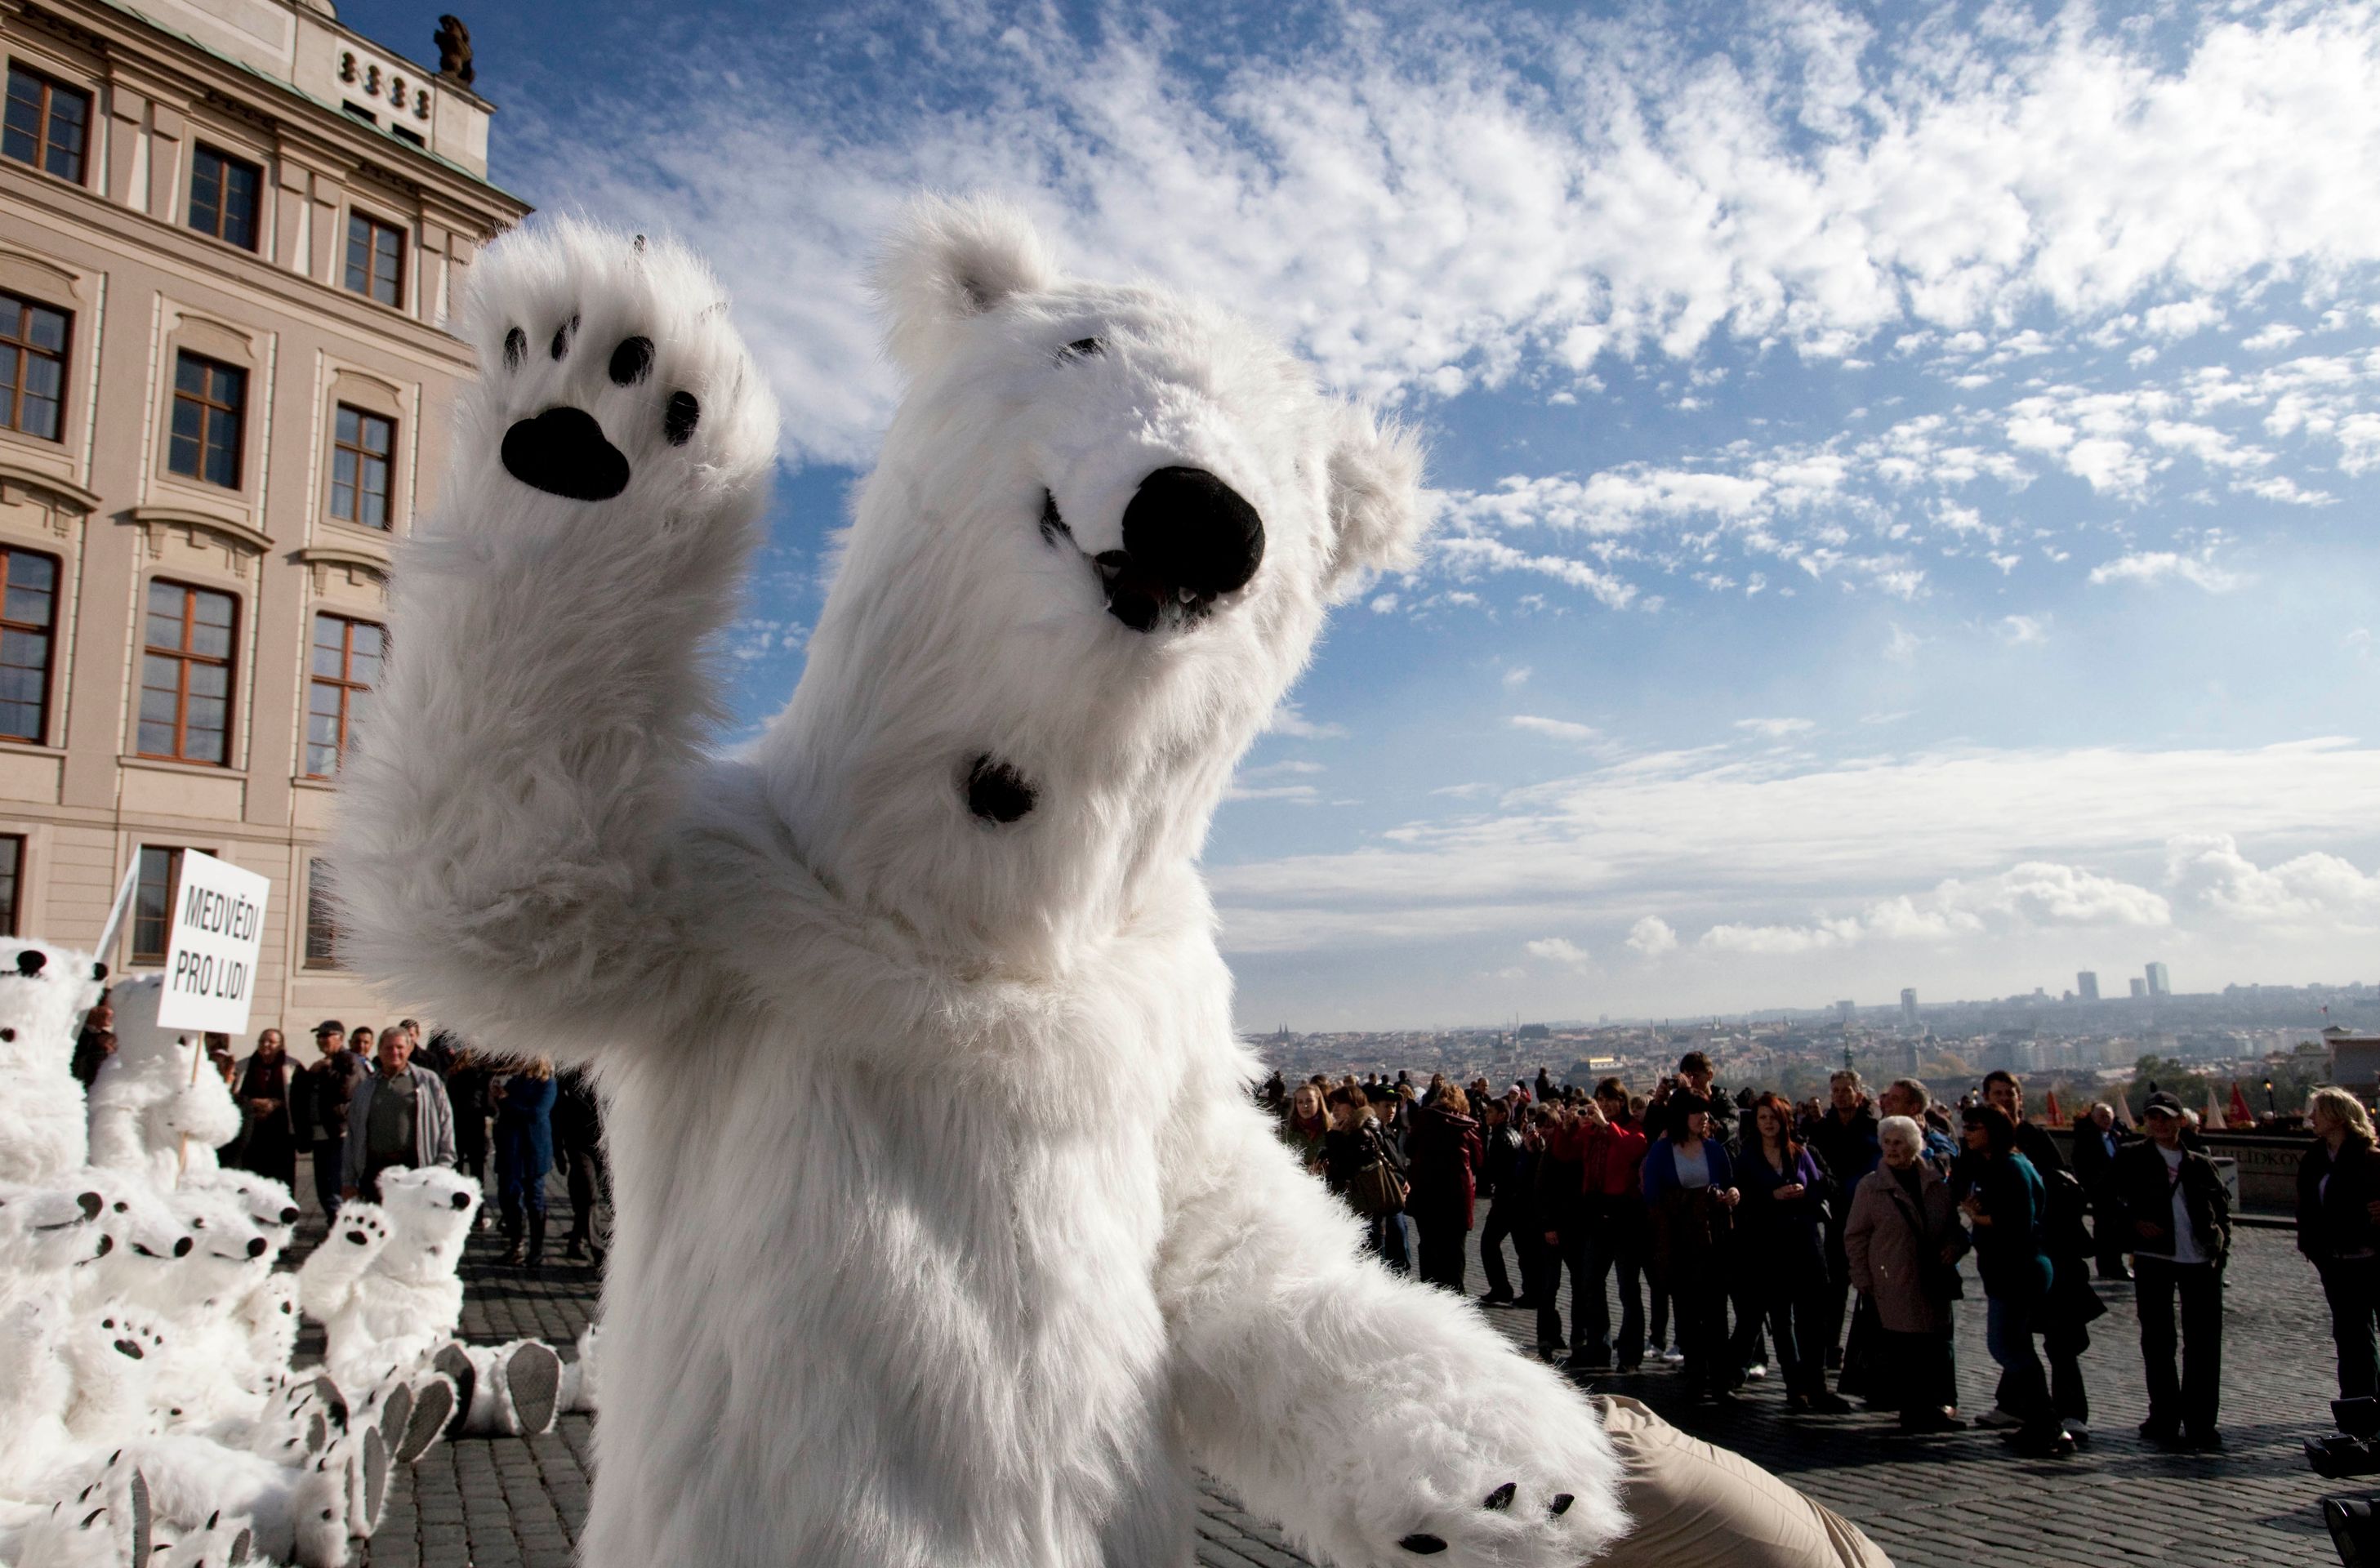 Na Hradě demonstrovali "lední medvědi" - GALERIE: "Lední medvědi" demonstrovali na Hradě (1/7)